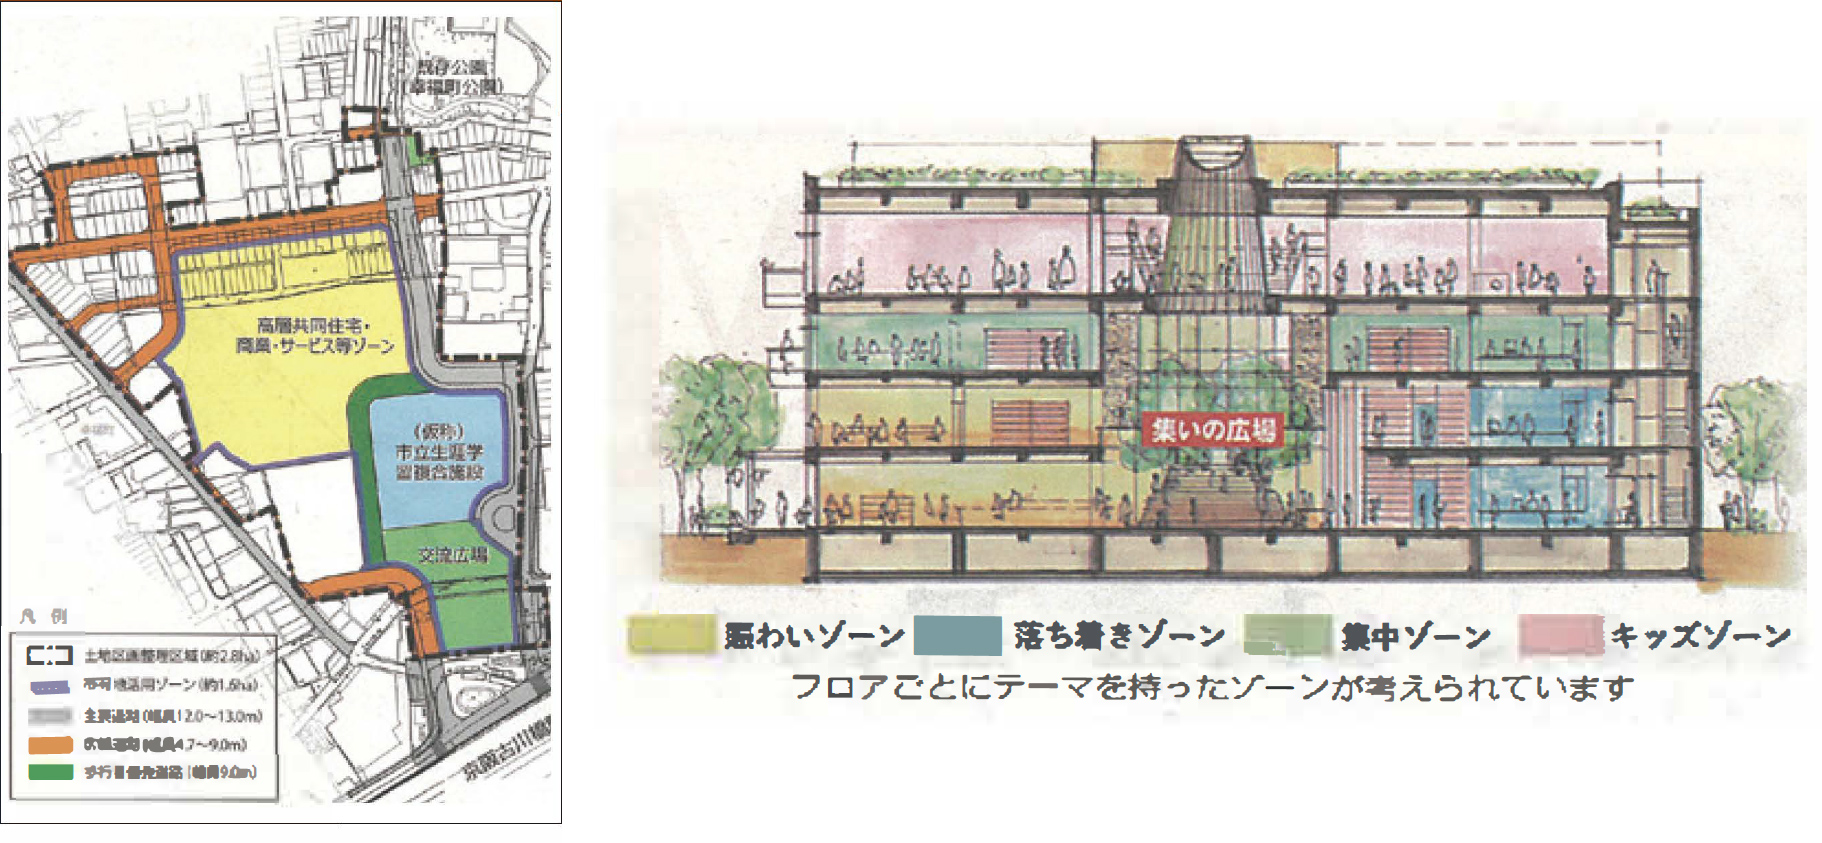 旧第一中学校跡地開発により古川橋駅前北側は大きく変わります。生涯学習複合施設の未来図完成！